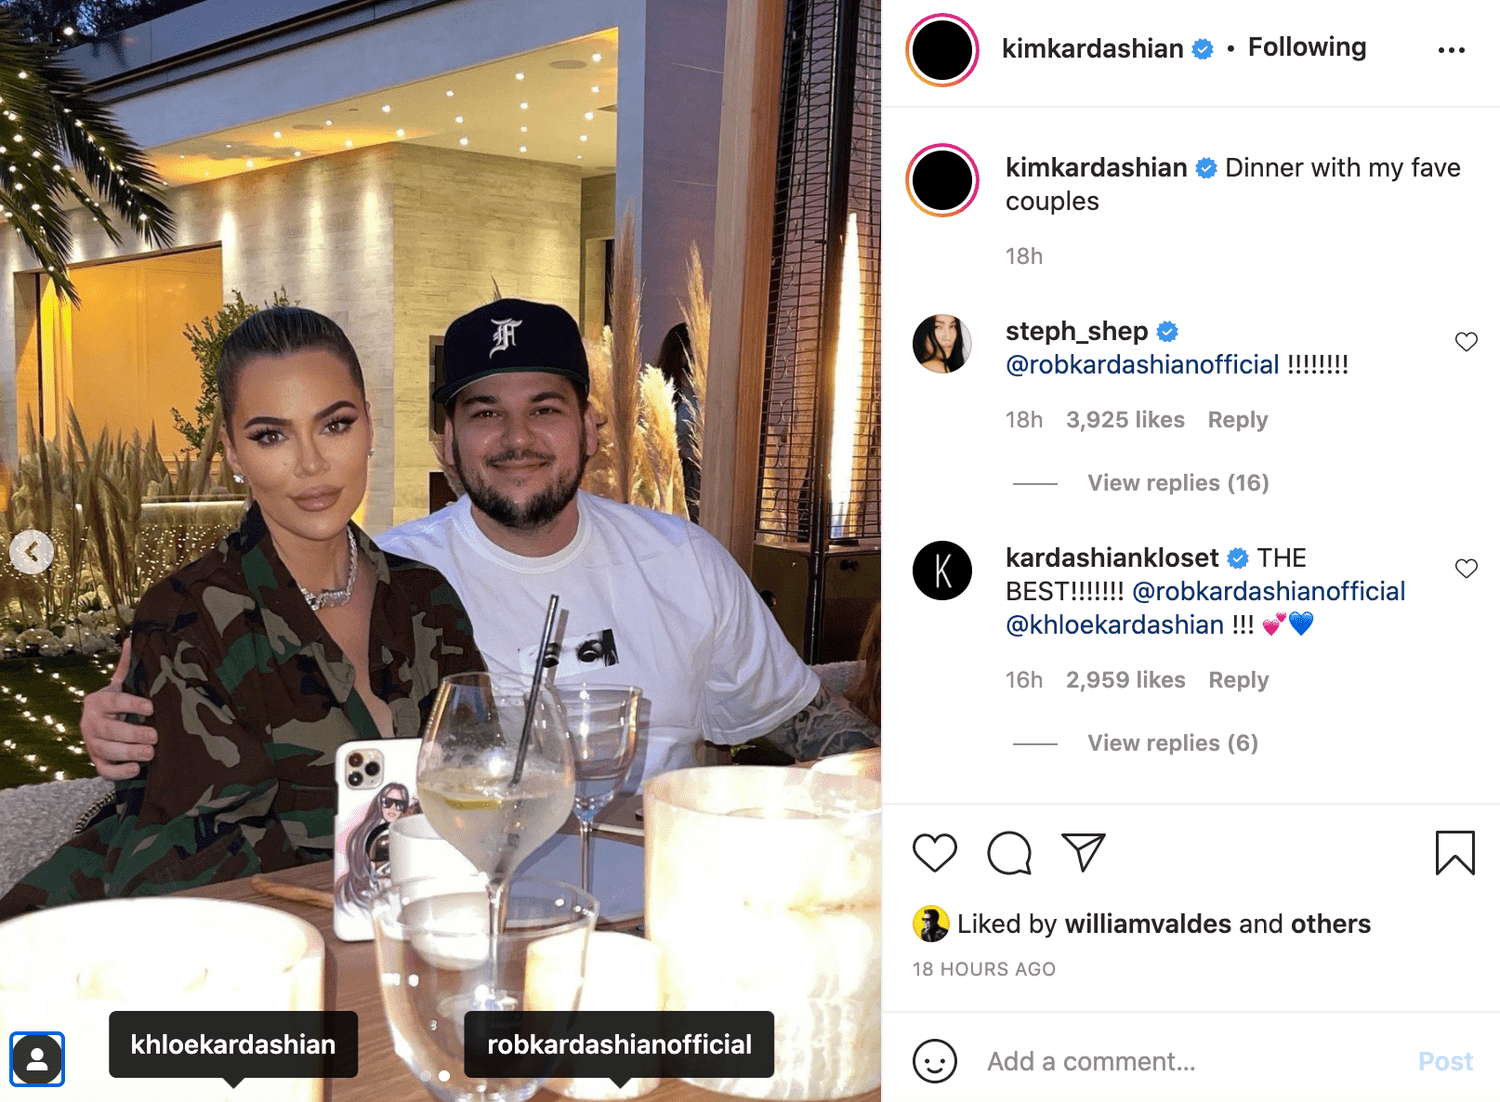 rob kardashian reaparece en redes sociales de kim kim kardashian